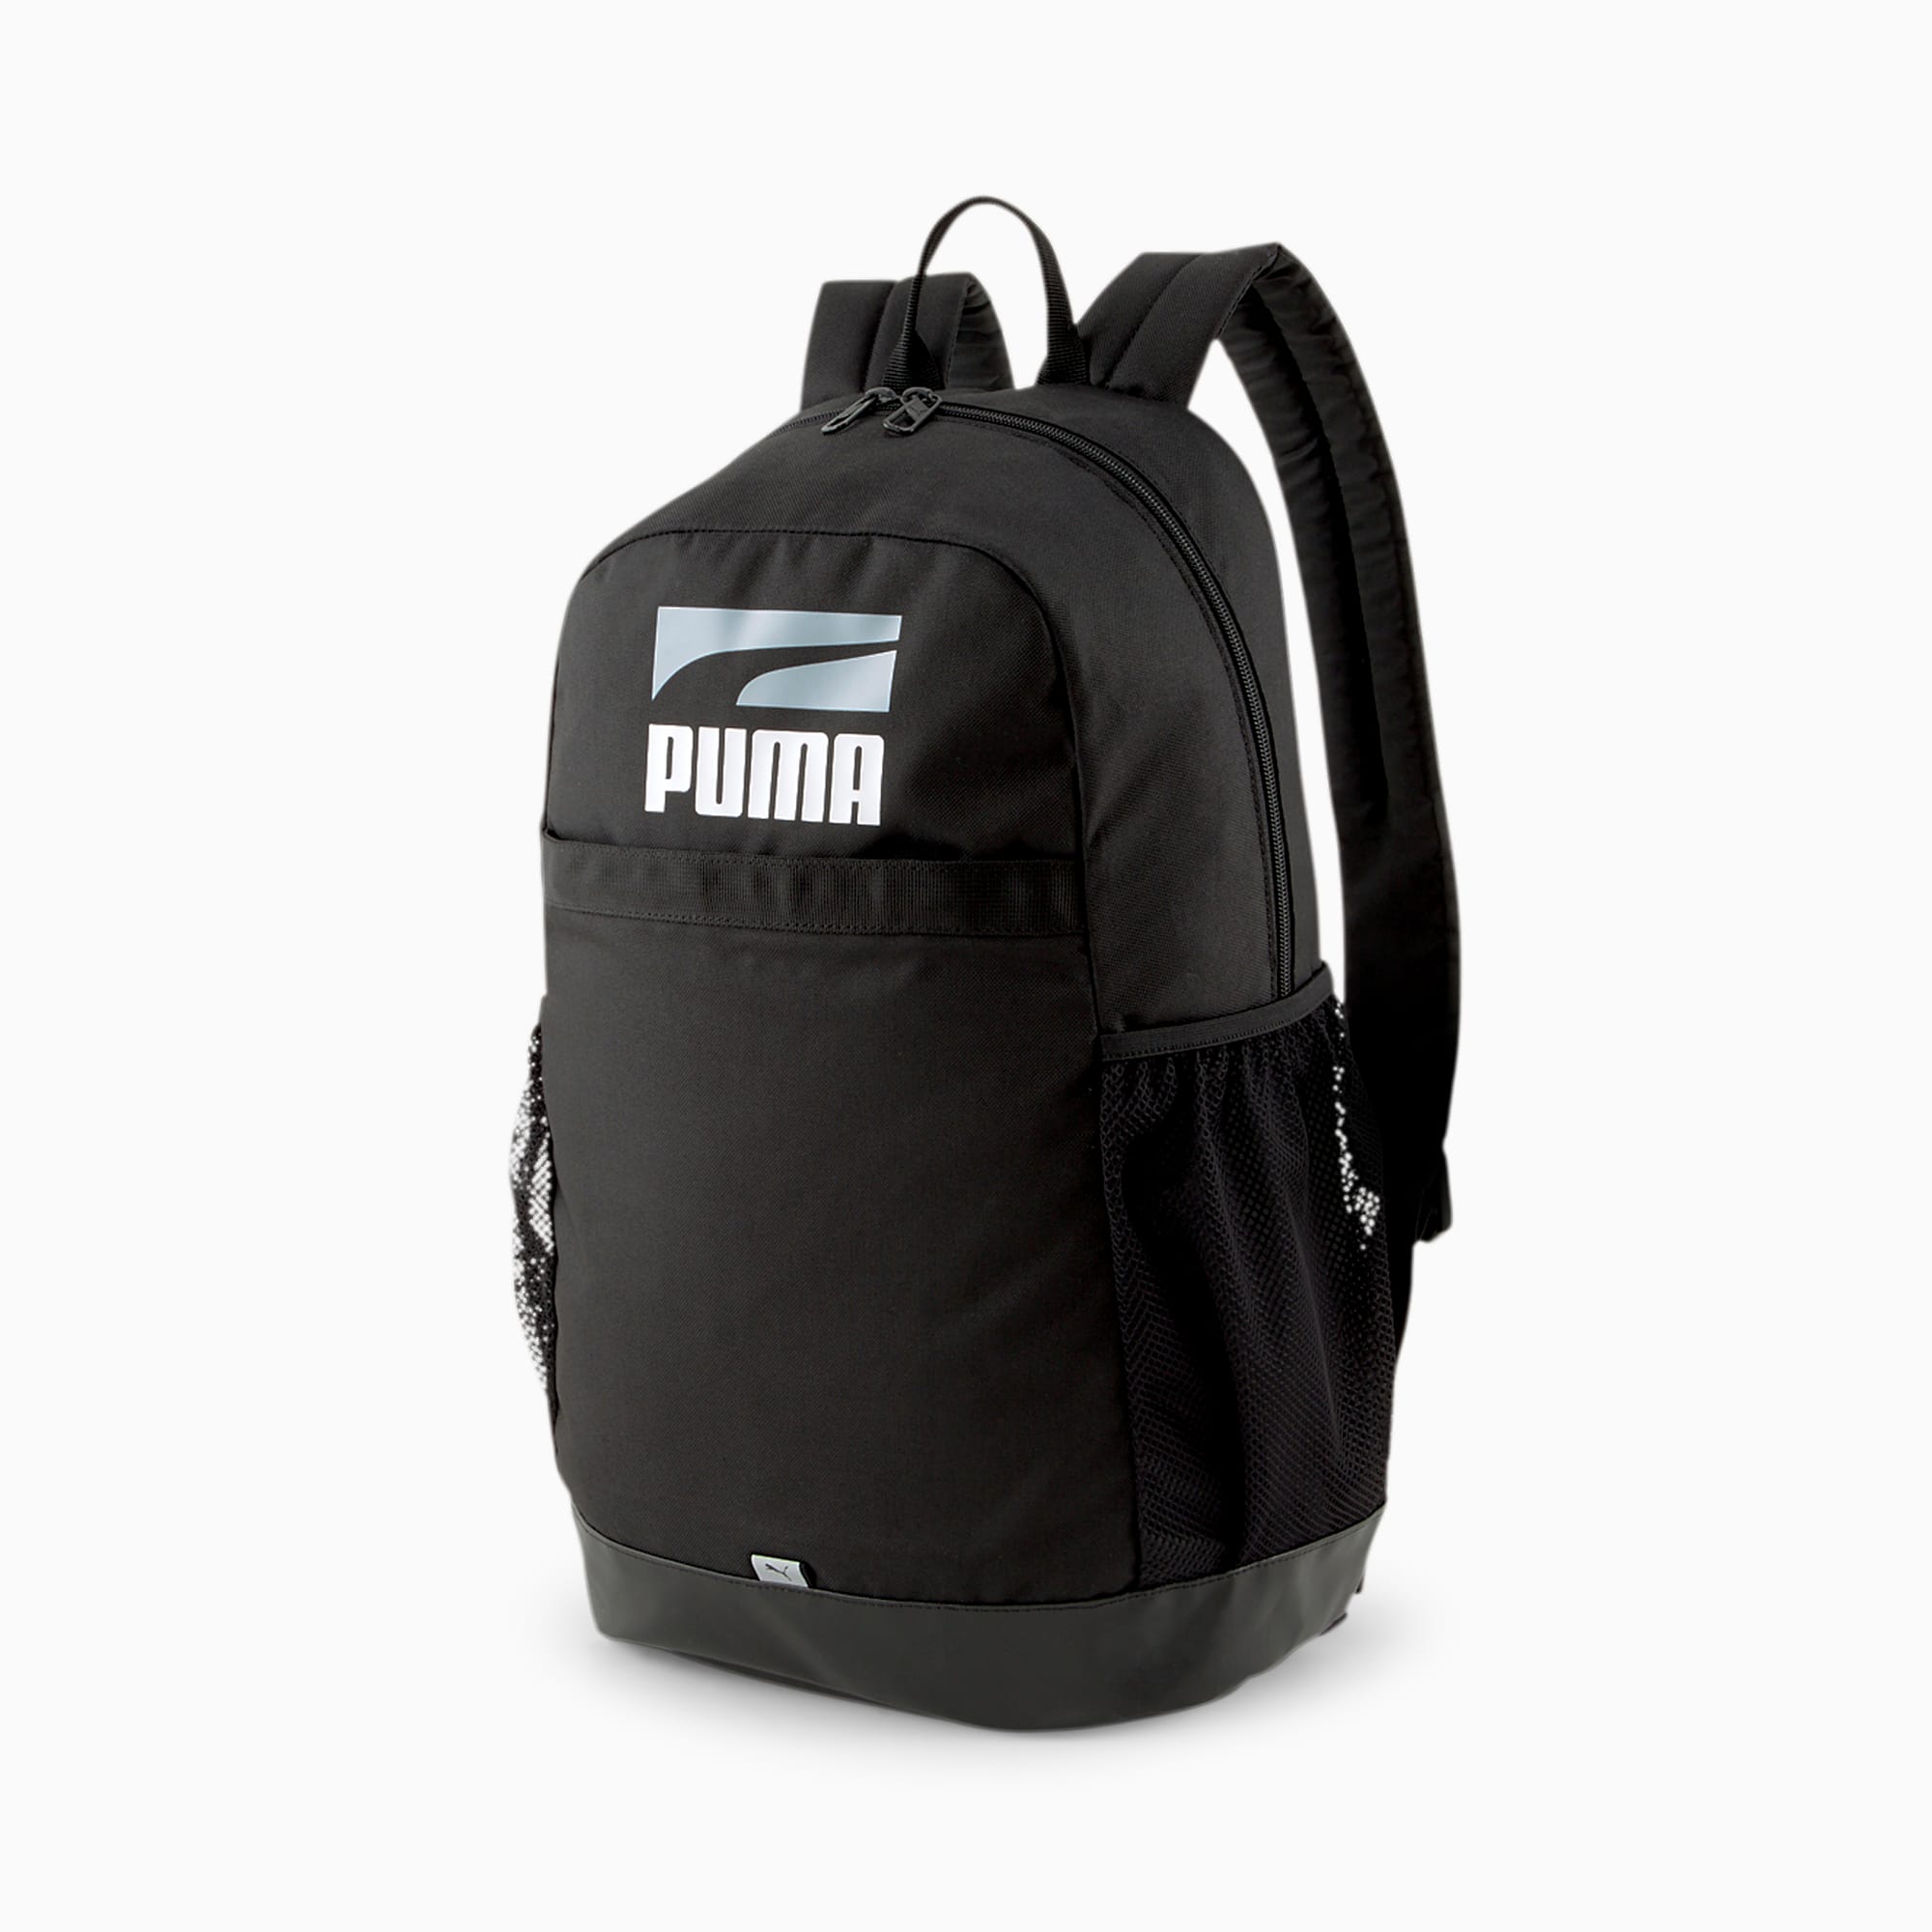 Plus Backpack II PUMA |